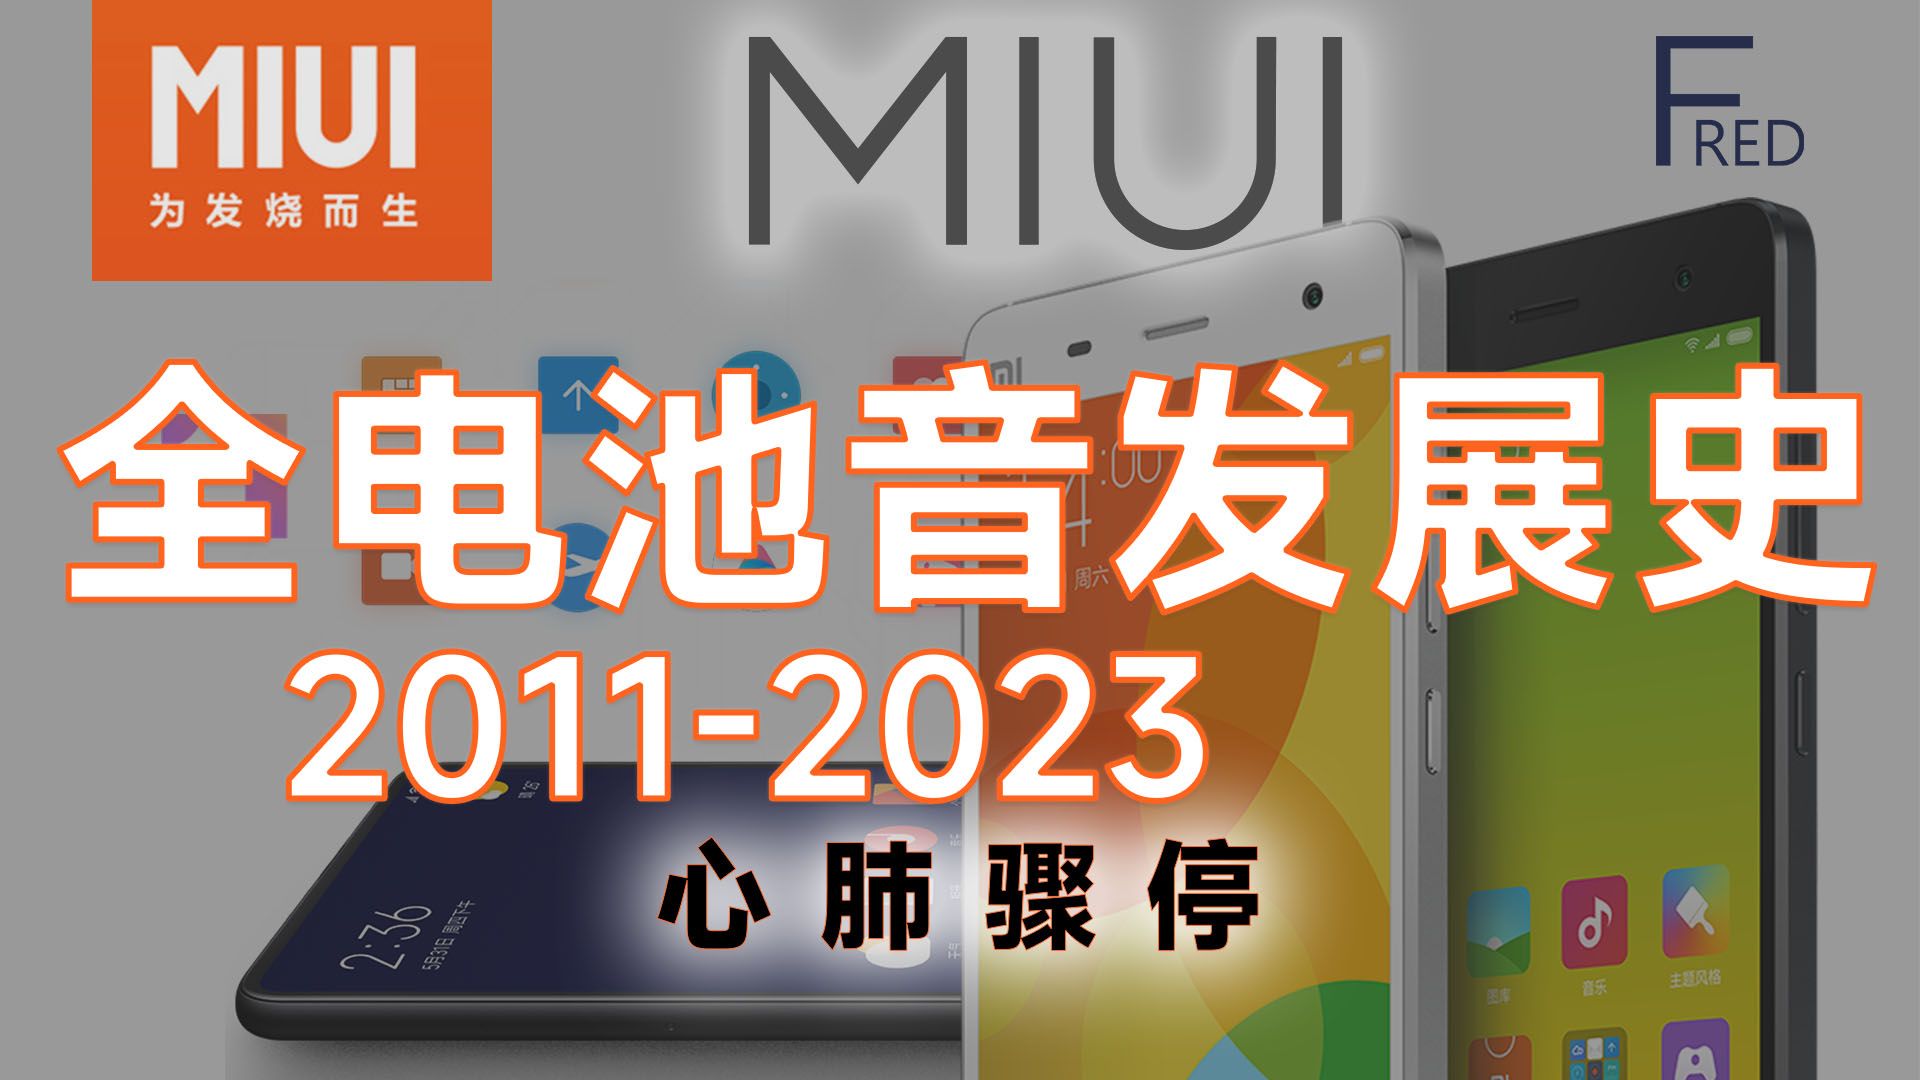 【小米考古】MIUI全低电量/充电音 UI音效演变史 2011-2023 大概最全